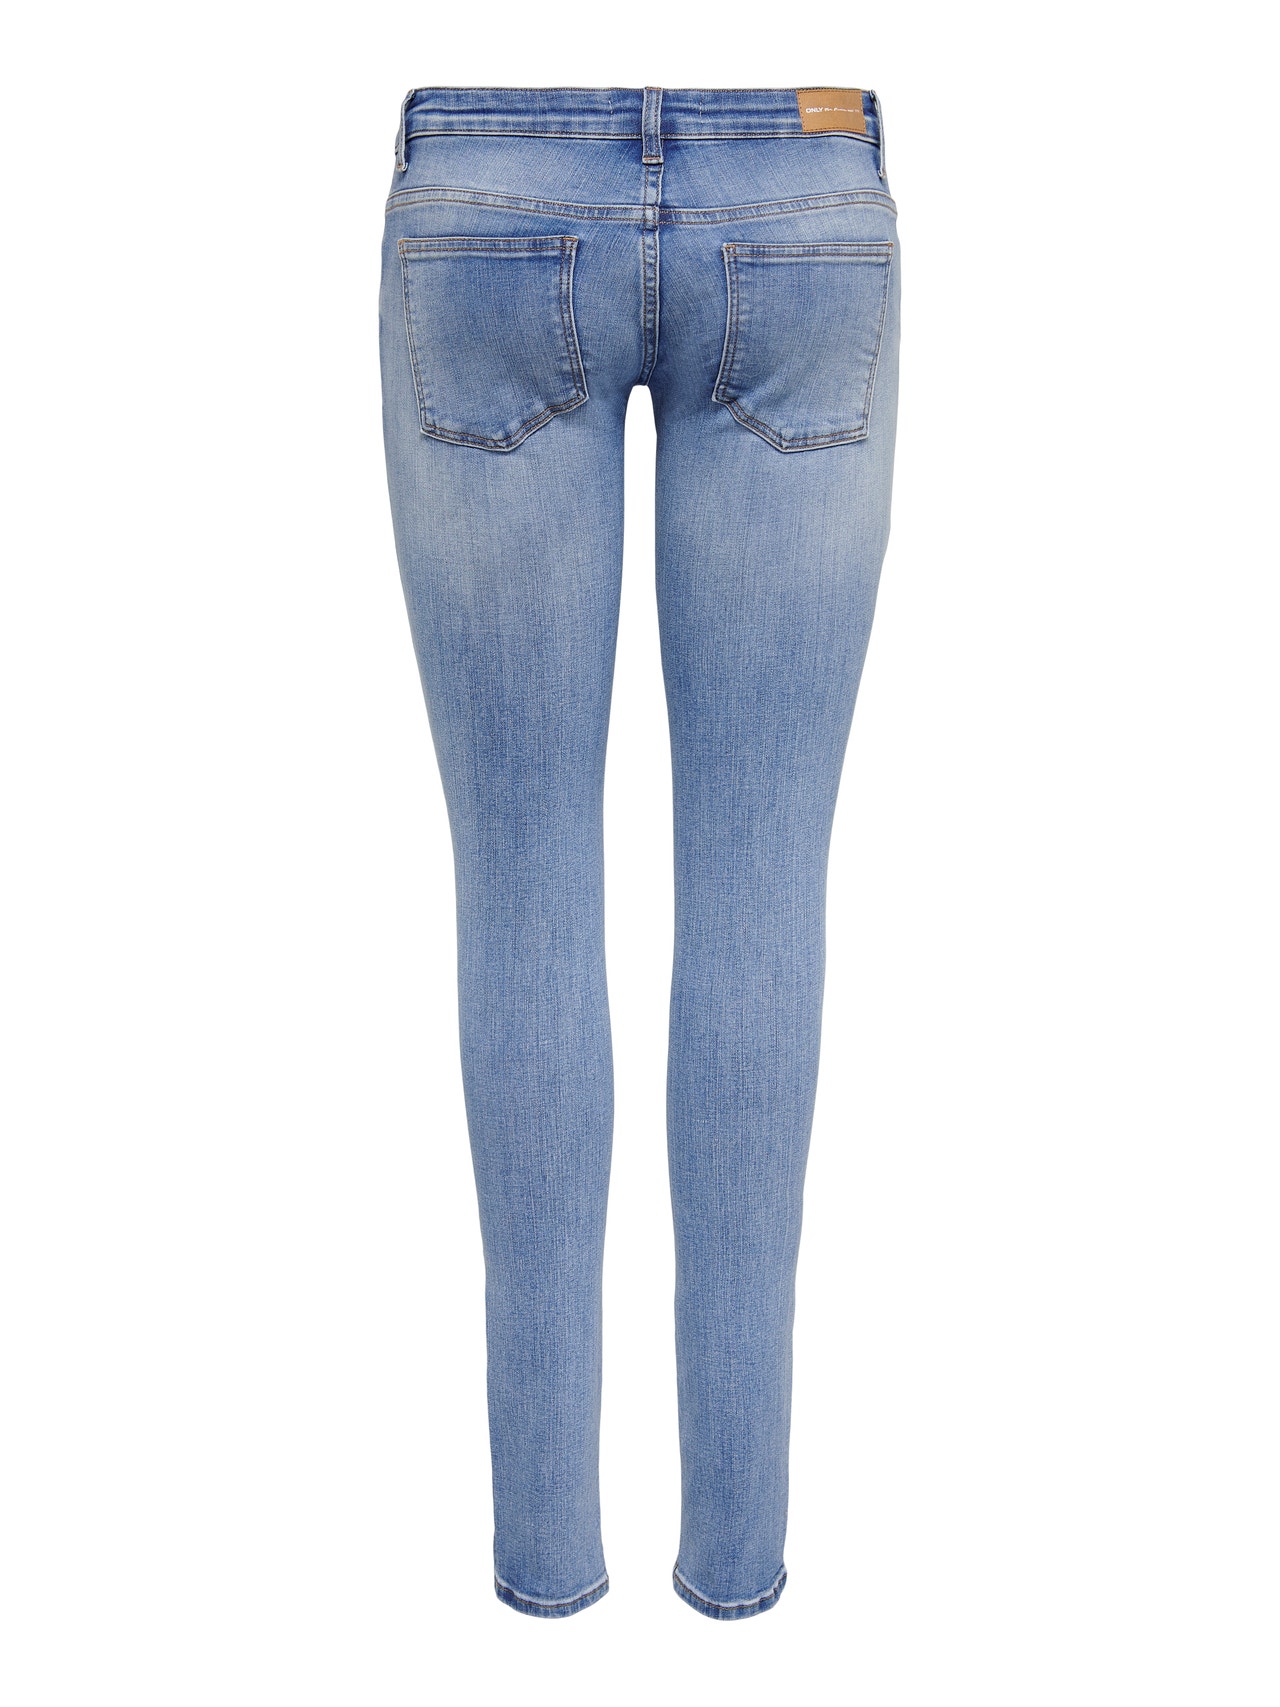 ONLY Jeans Skinny Fit Taille basse Ourlé destroy -Light Medium Blue Denim - 15282056